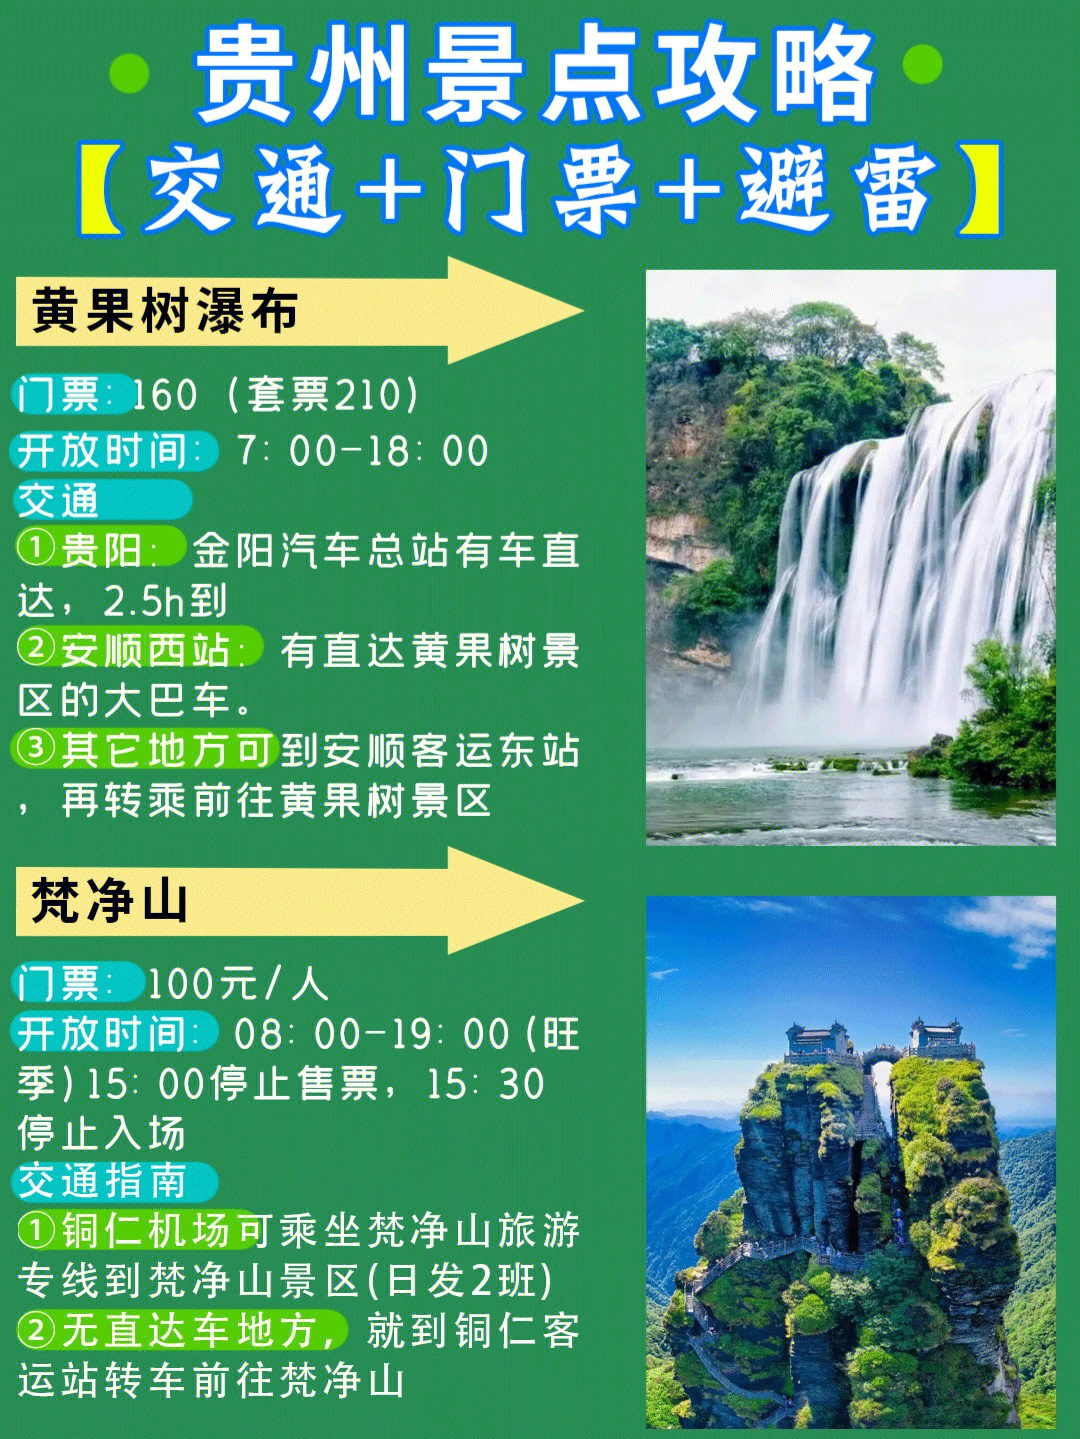 大家都会需要的06贵州必去景点交通16615黄果树瀑布78贵阳